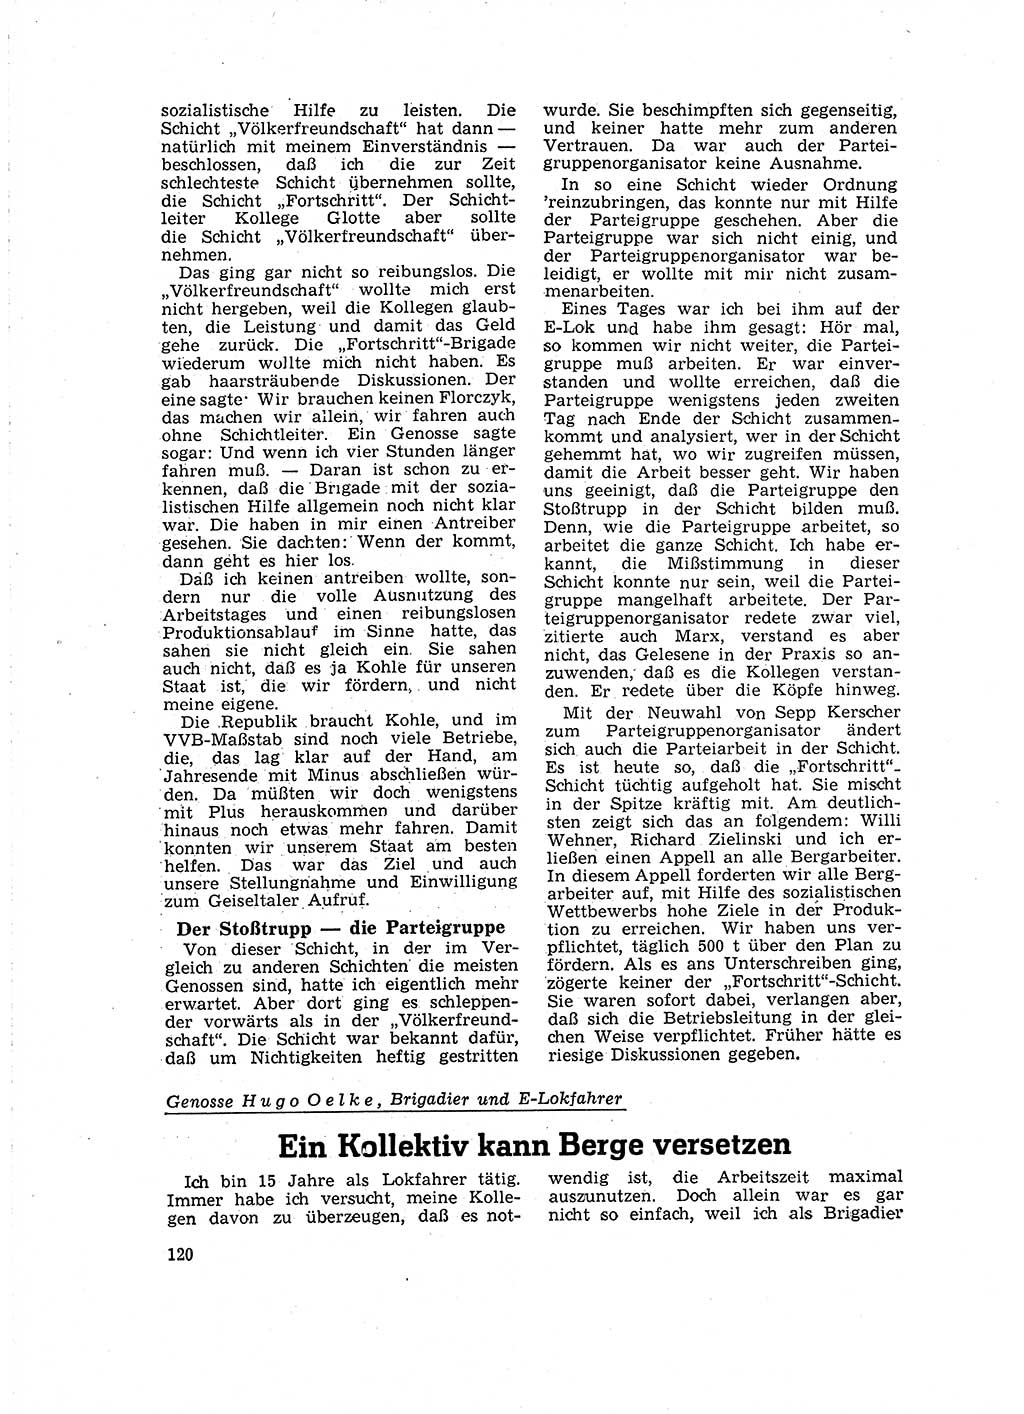 Neuer Weg (NW), Organ des Zentralkomitees (ZK) der SED (Sozialistische Einheitspartei Deutschlands) für Fragen des Parteilebens, 16. Jahrgang [Deutsche Demokratische Republik (DDR)] 1961, Seite 120 (NW ZK SED DDR 1961, S. 120)